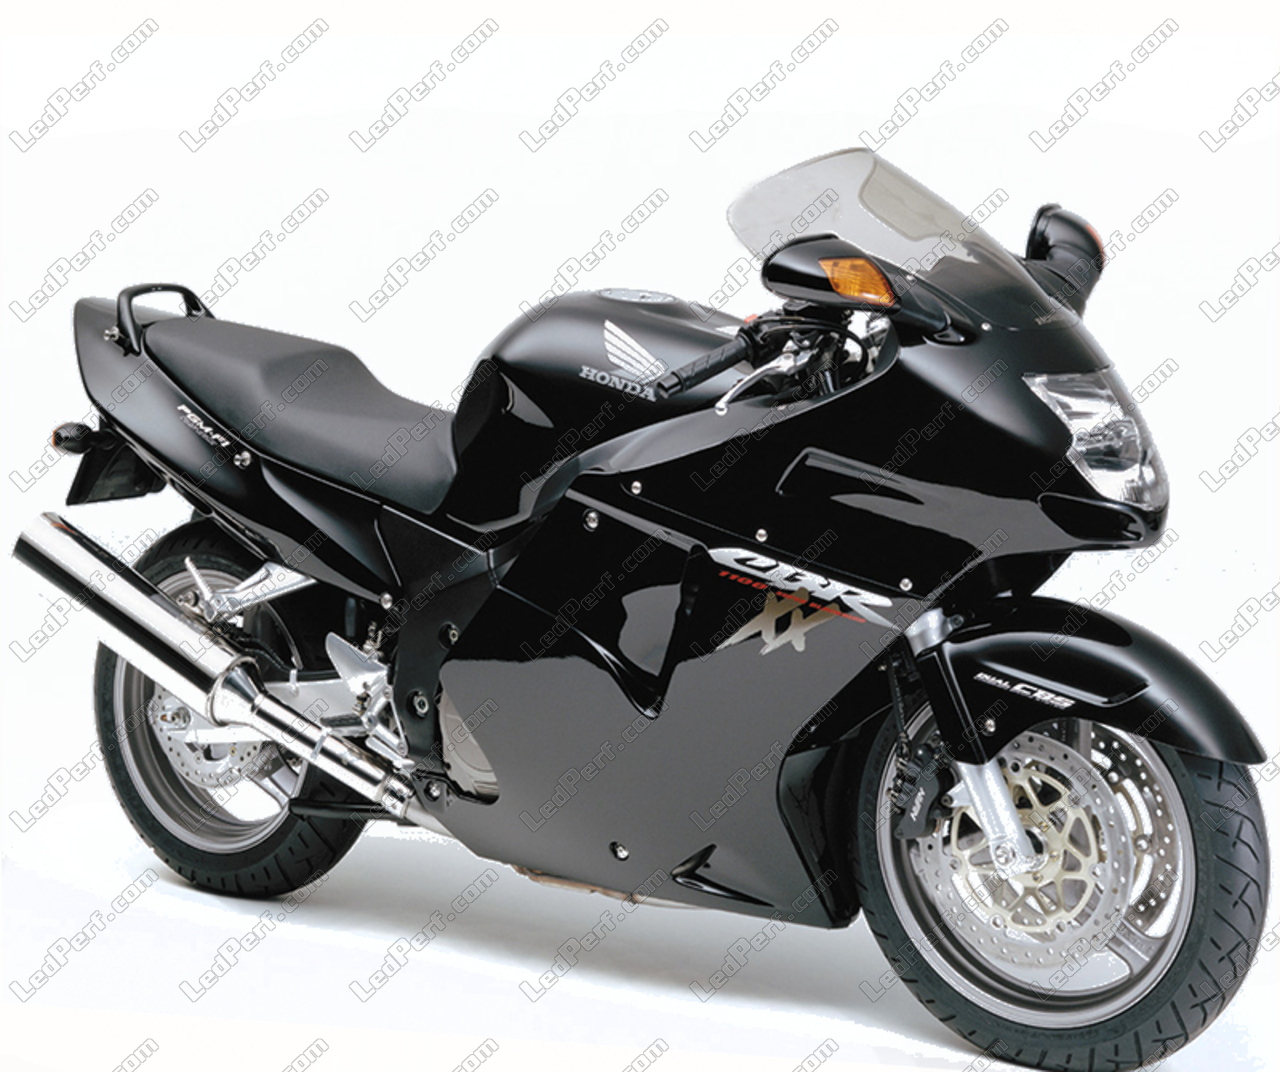 2 12v Motorrad Blinker Kontrollleuchten für Honda Cbr1100xx für